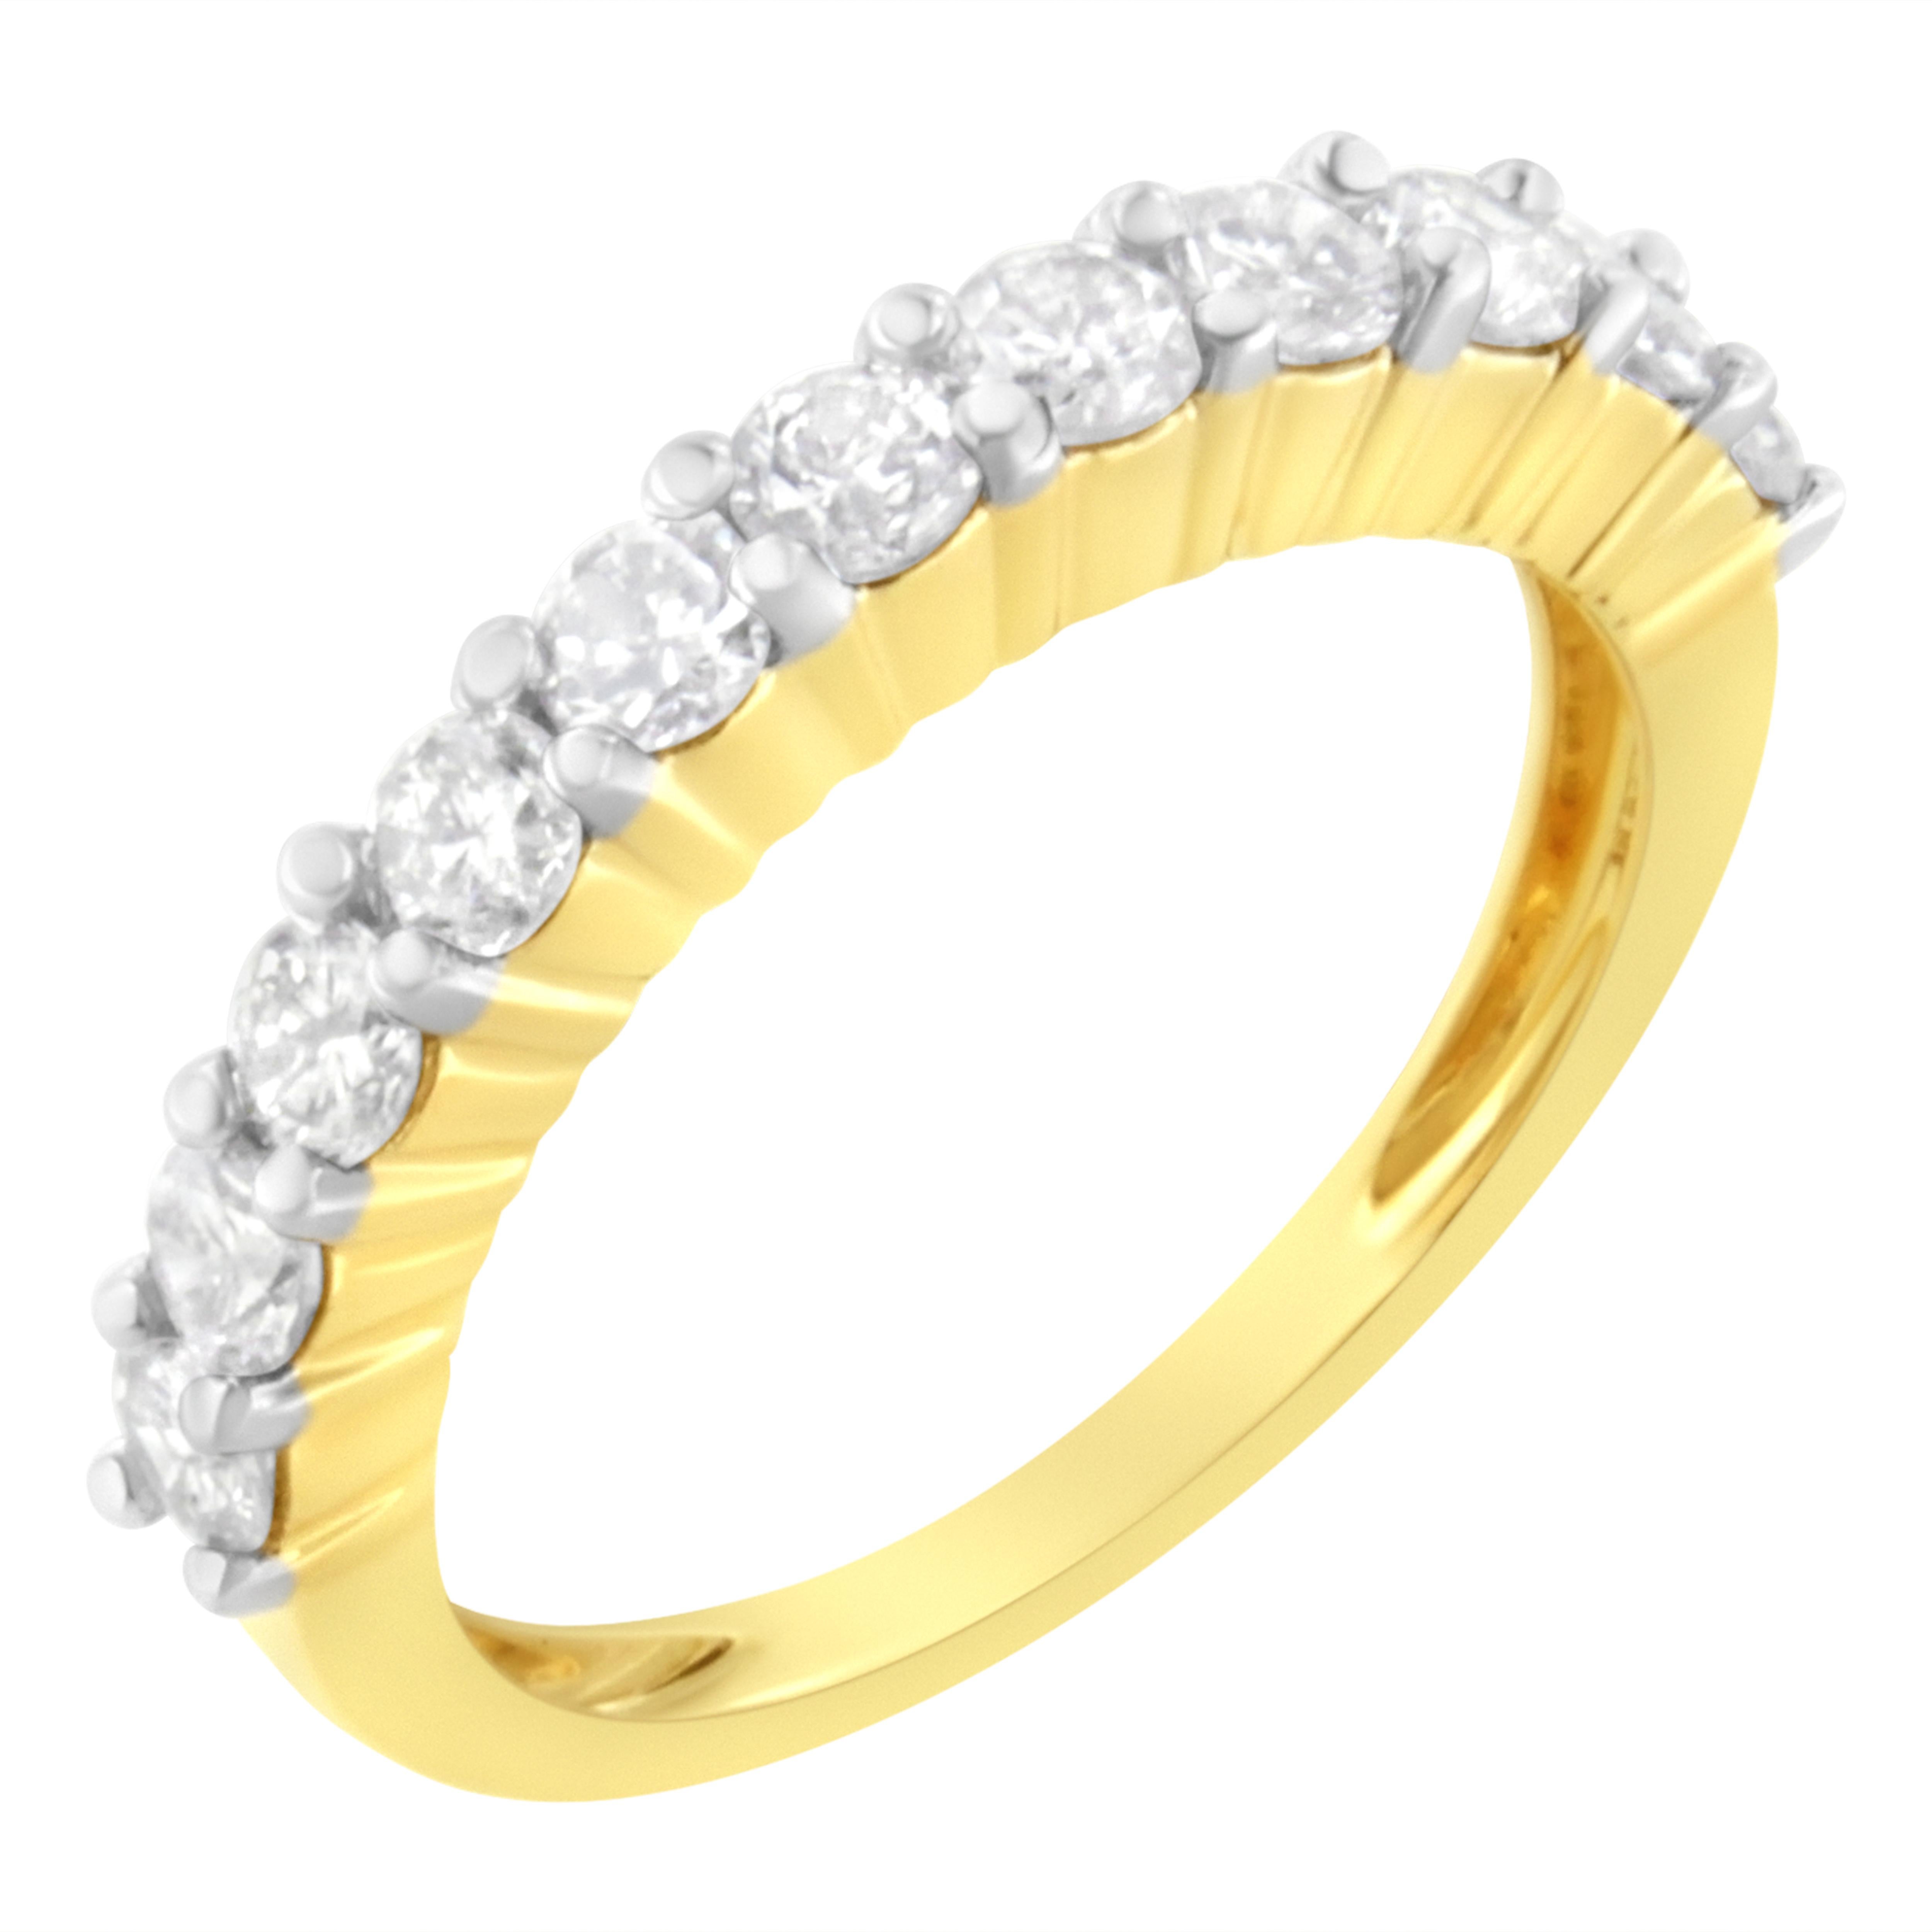 Dieser elegante und zeitlose Diamant-Hochzeitsring bietet Ihnen die Wahl zwischen 0,5 oder 1,0 Karat Gesamtgewicht an Diamanten mit elf einzelnen Steinen. Dieser exquisite, IGI-zertifizierte Ehering aus 10 Karat Gelbgold verfügt über elf